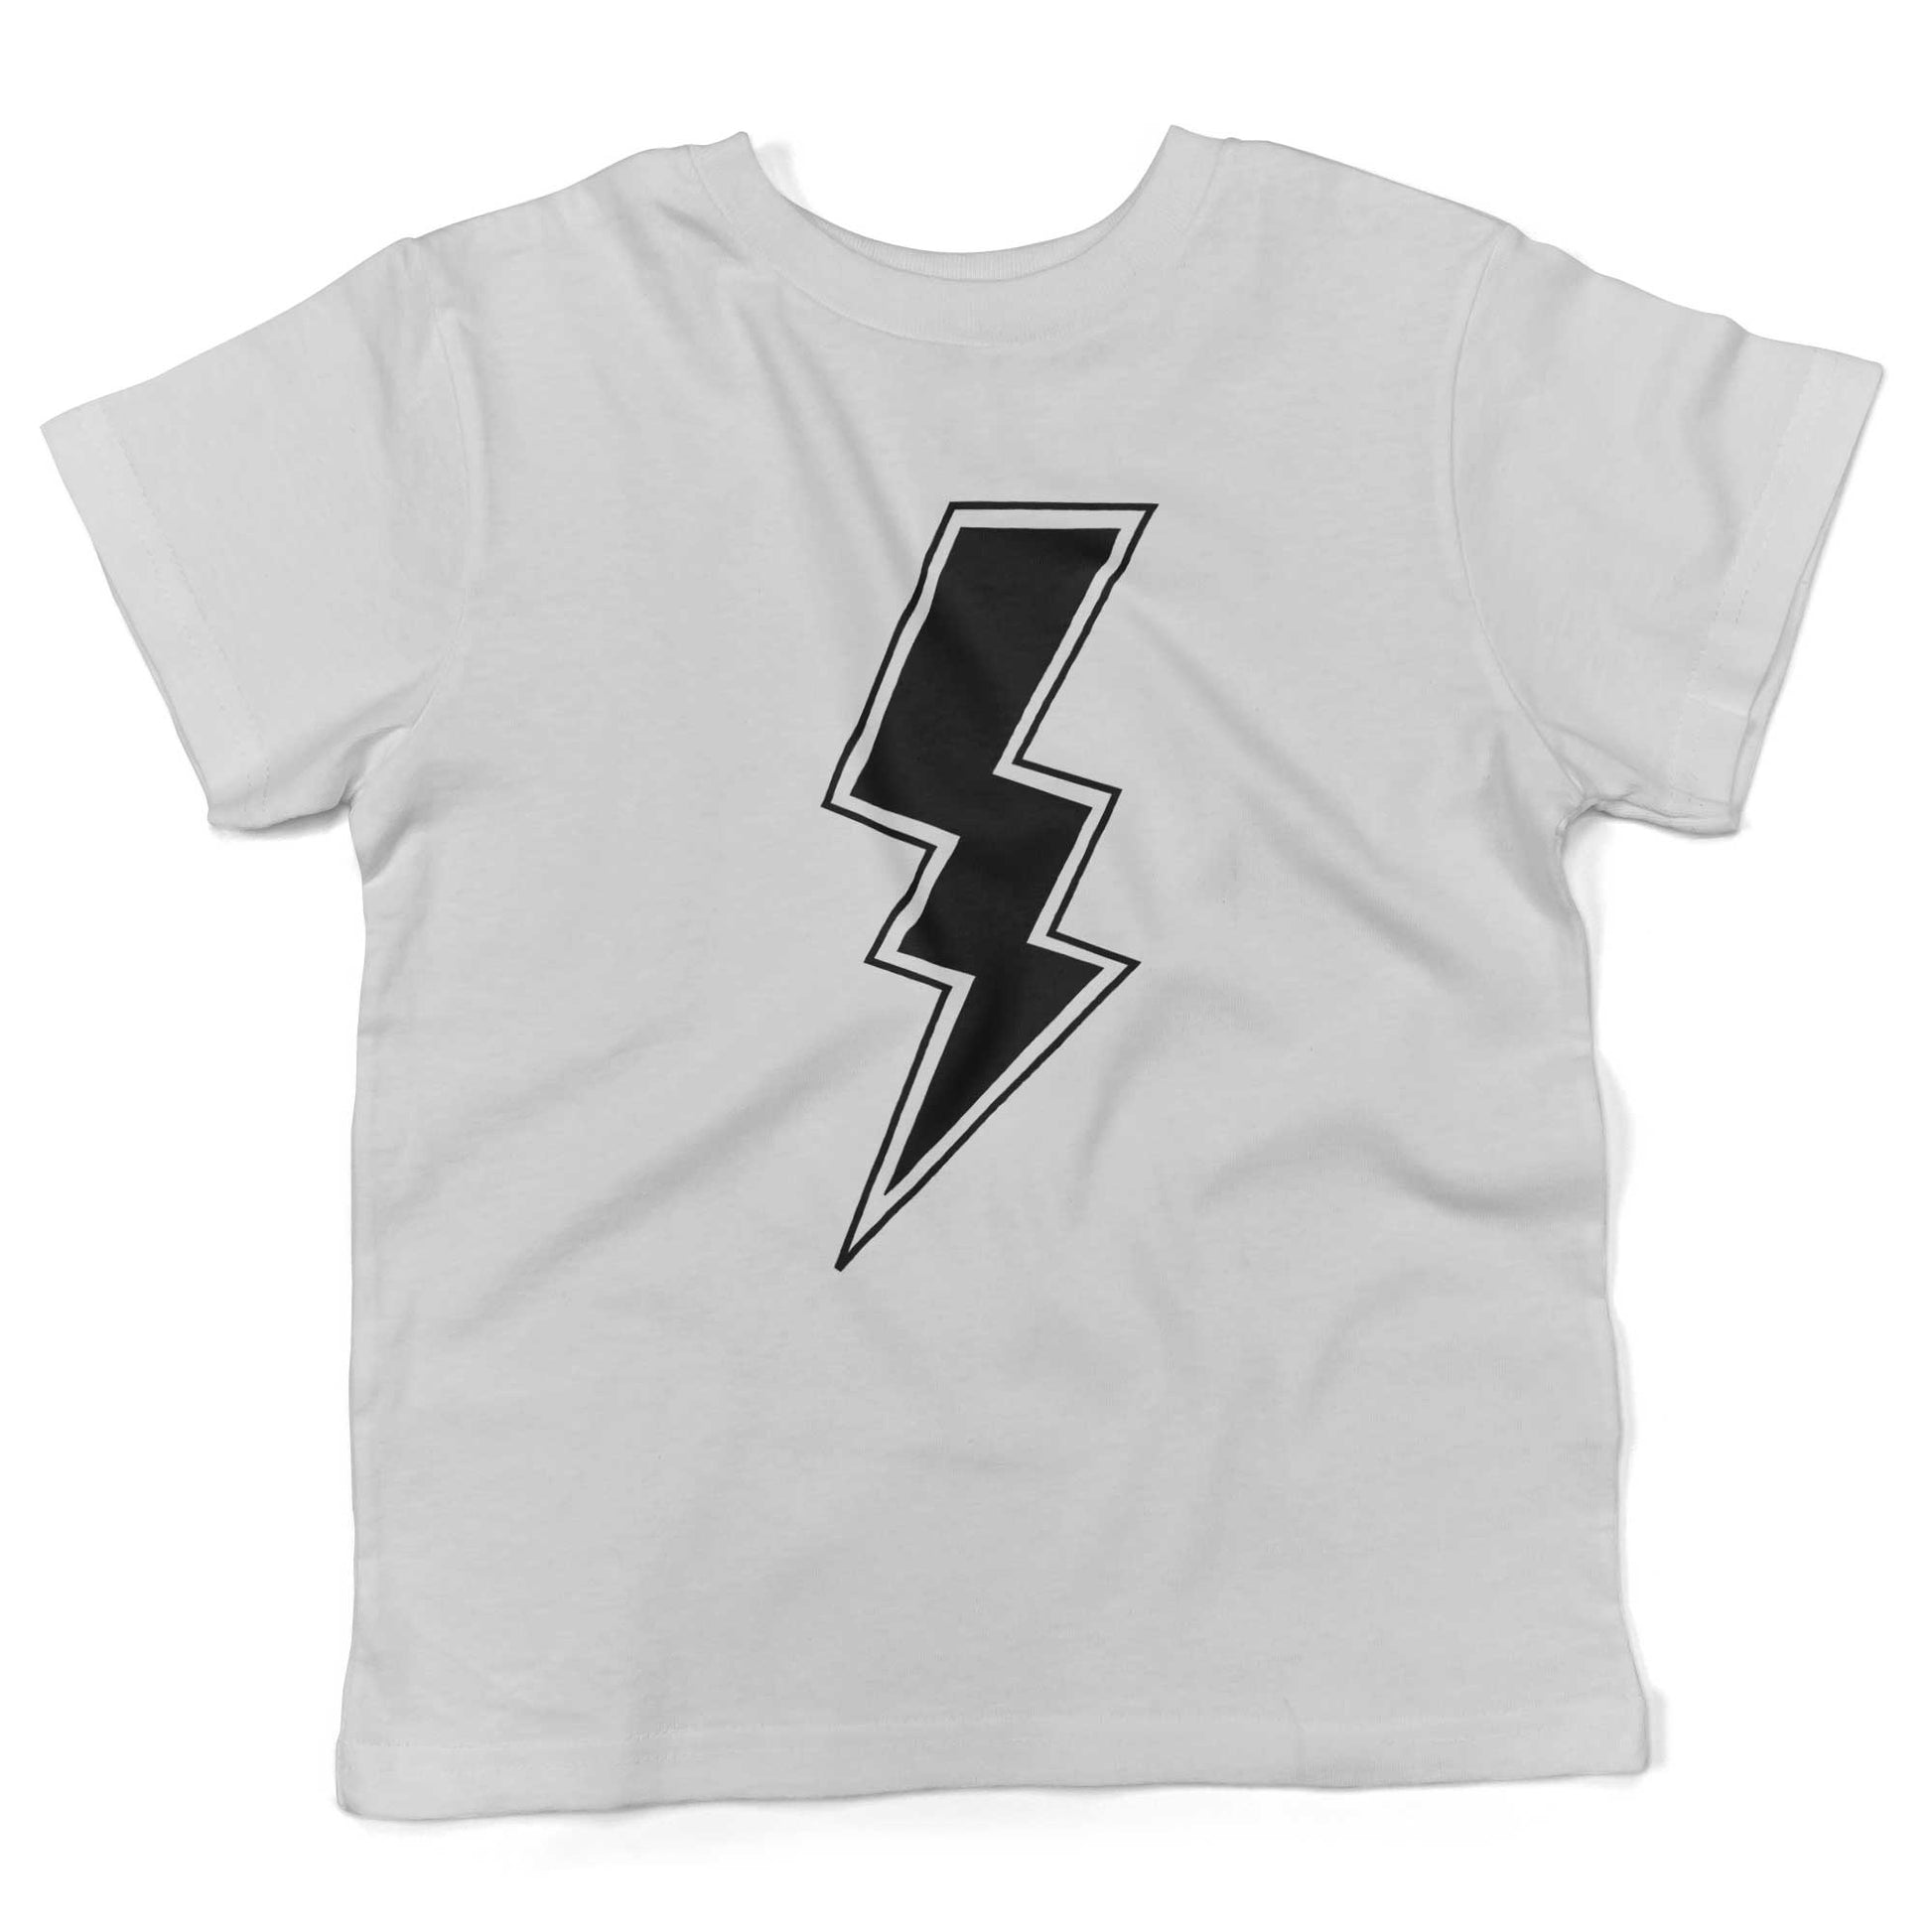 Giant Lightning Bolt Toddler Shirt-White-2T